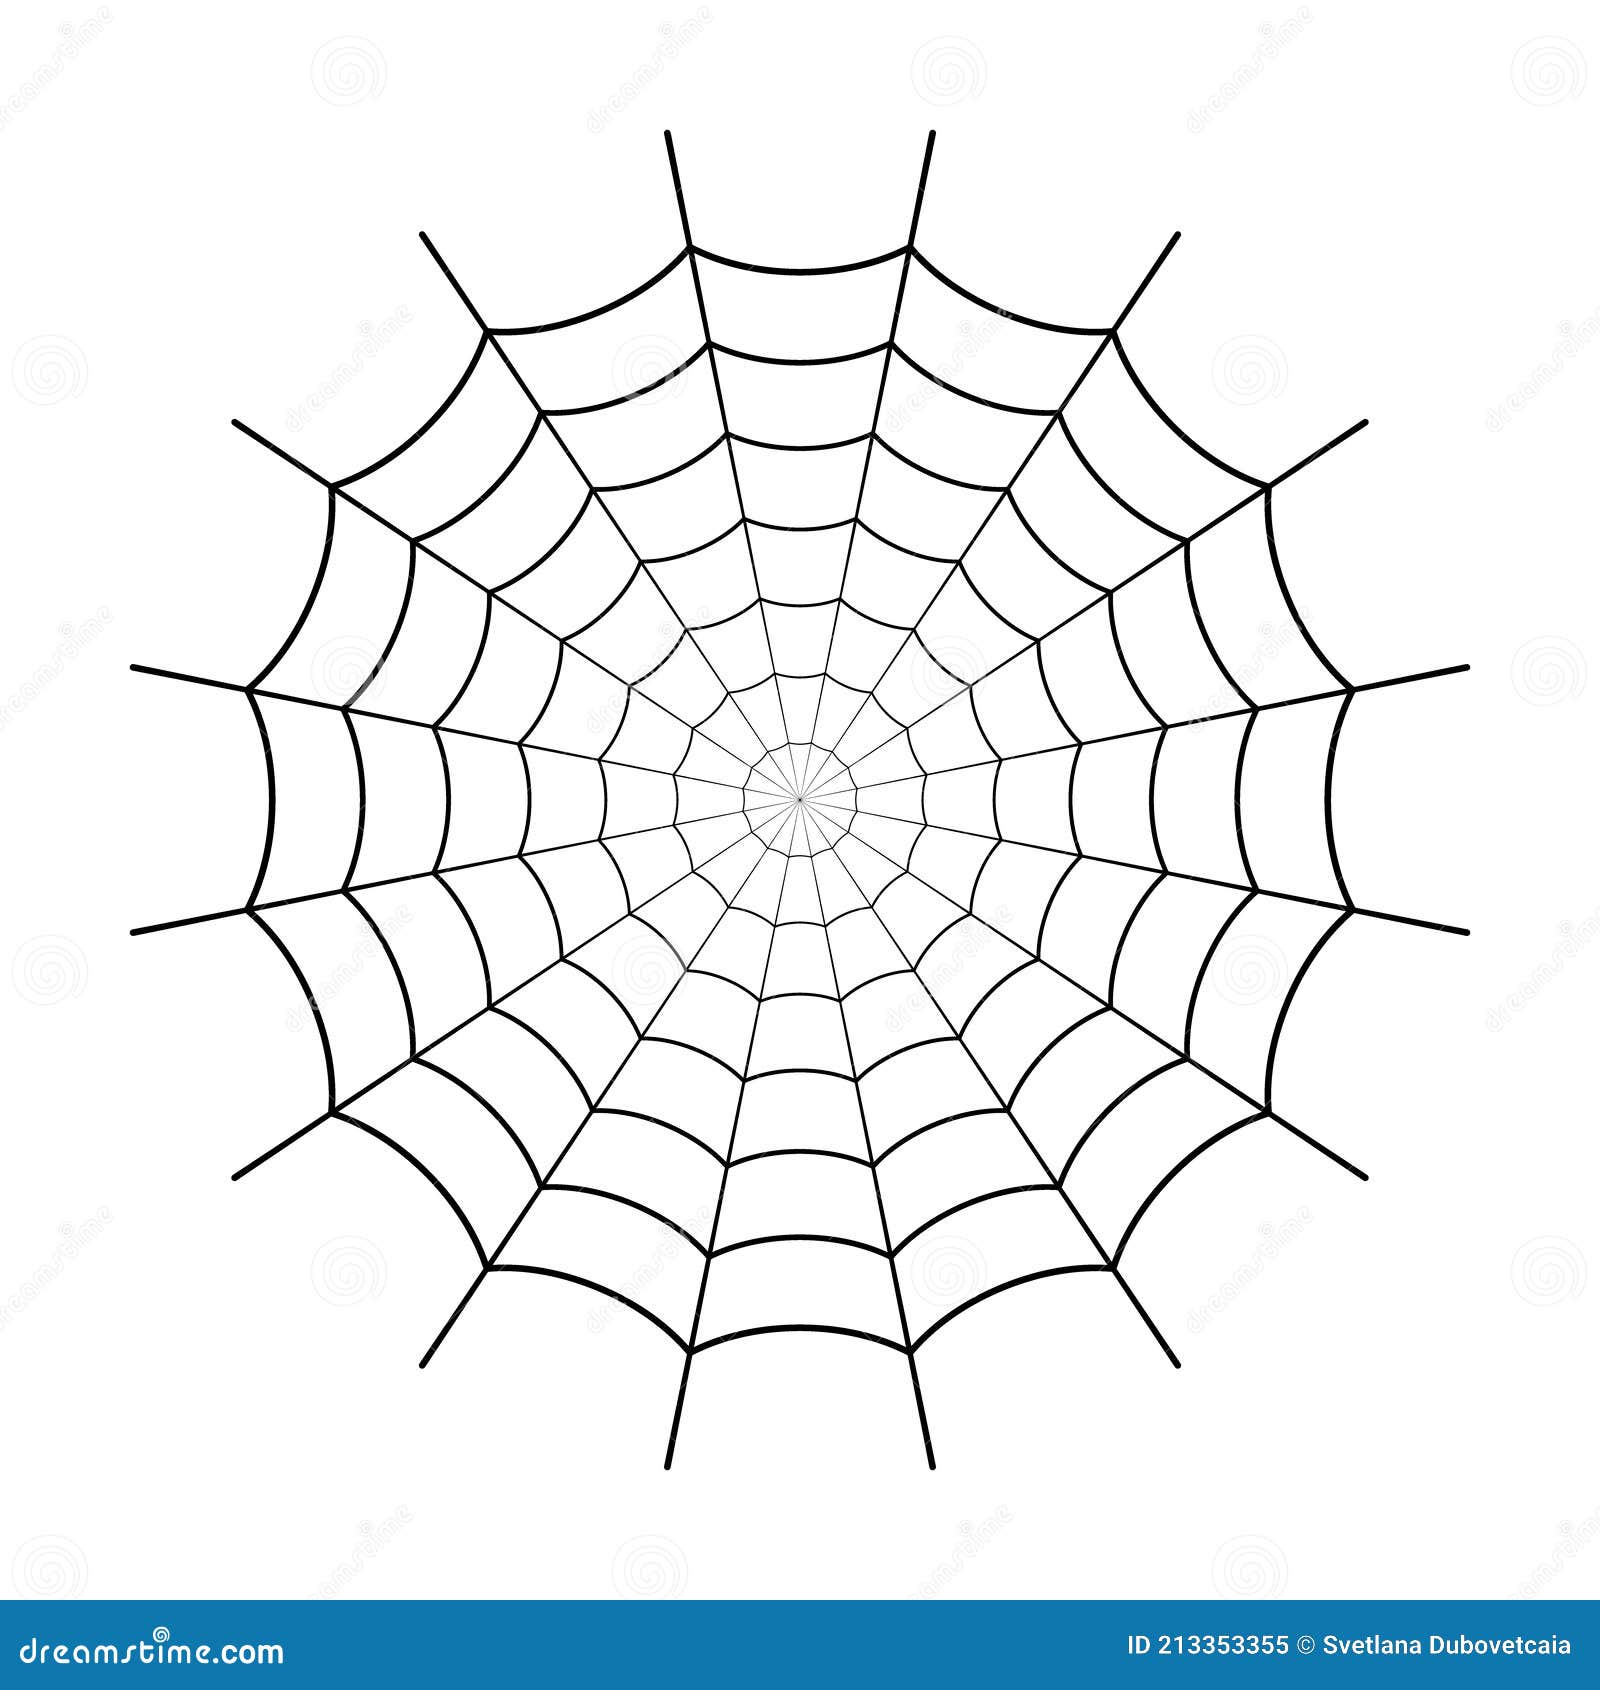 Spider web icon. Circle cobweb vector silhouette. Spiderweb clip art. Flat  vector illustration. Stock Vector